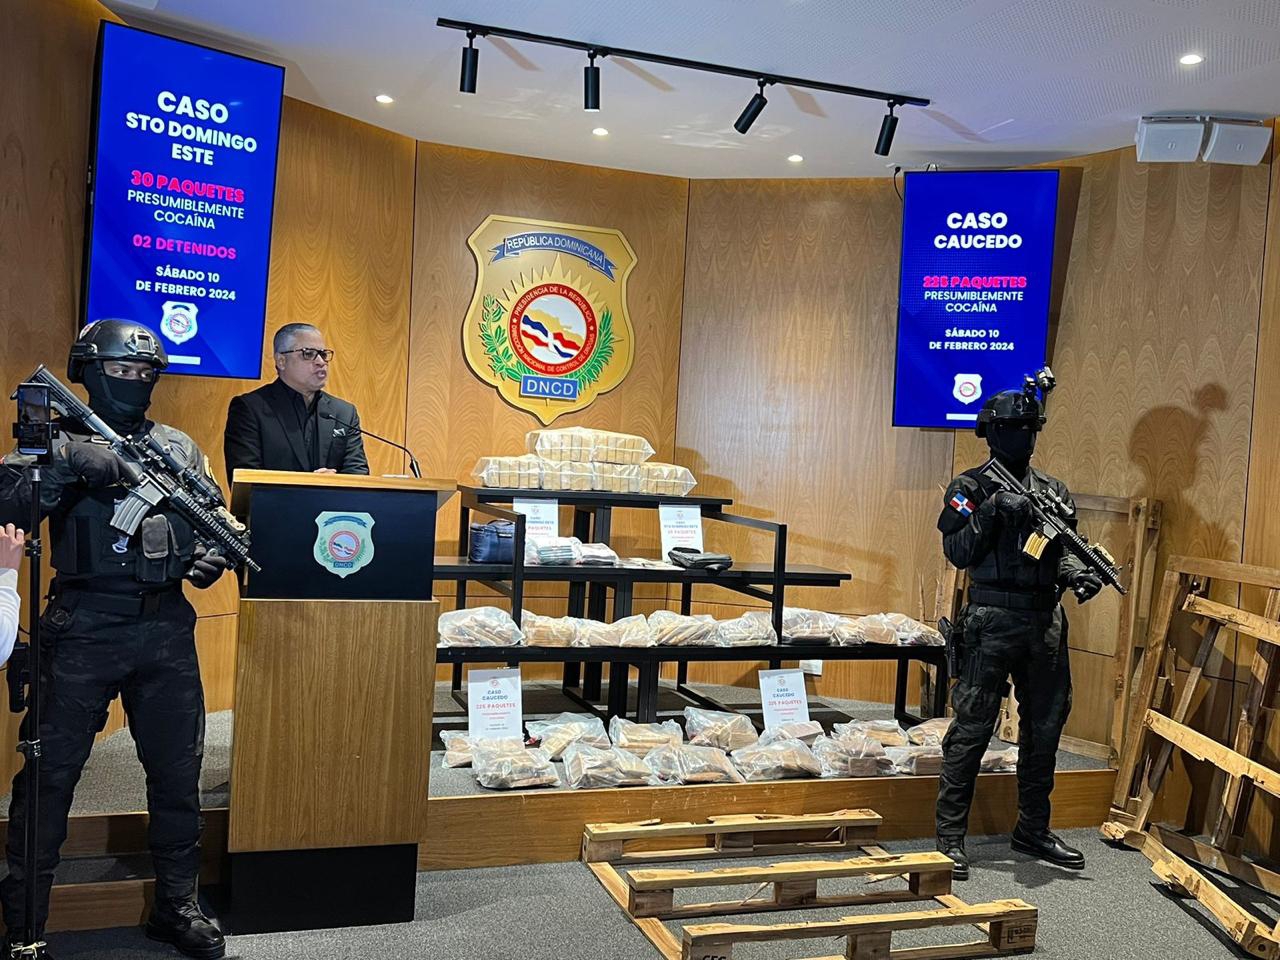 Ocupan en Puerto Caucedo 225 paquetes de presunta cocaína